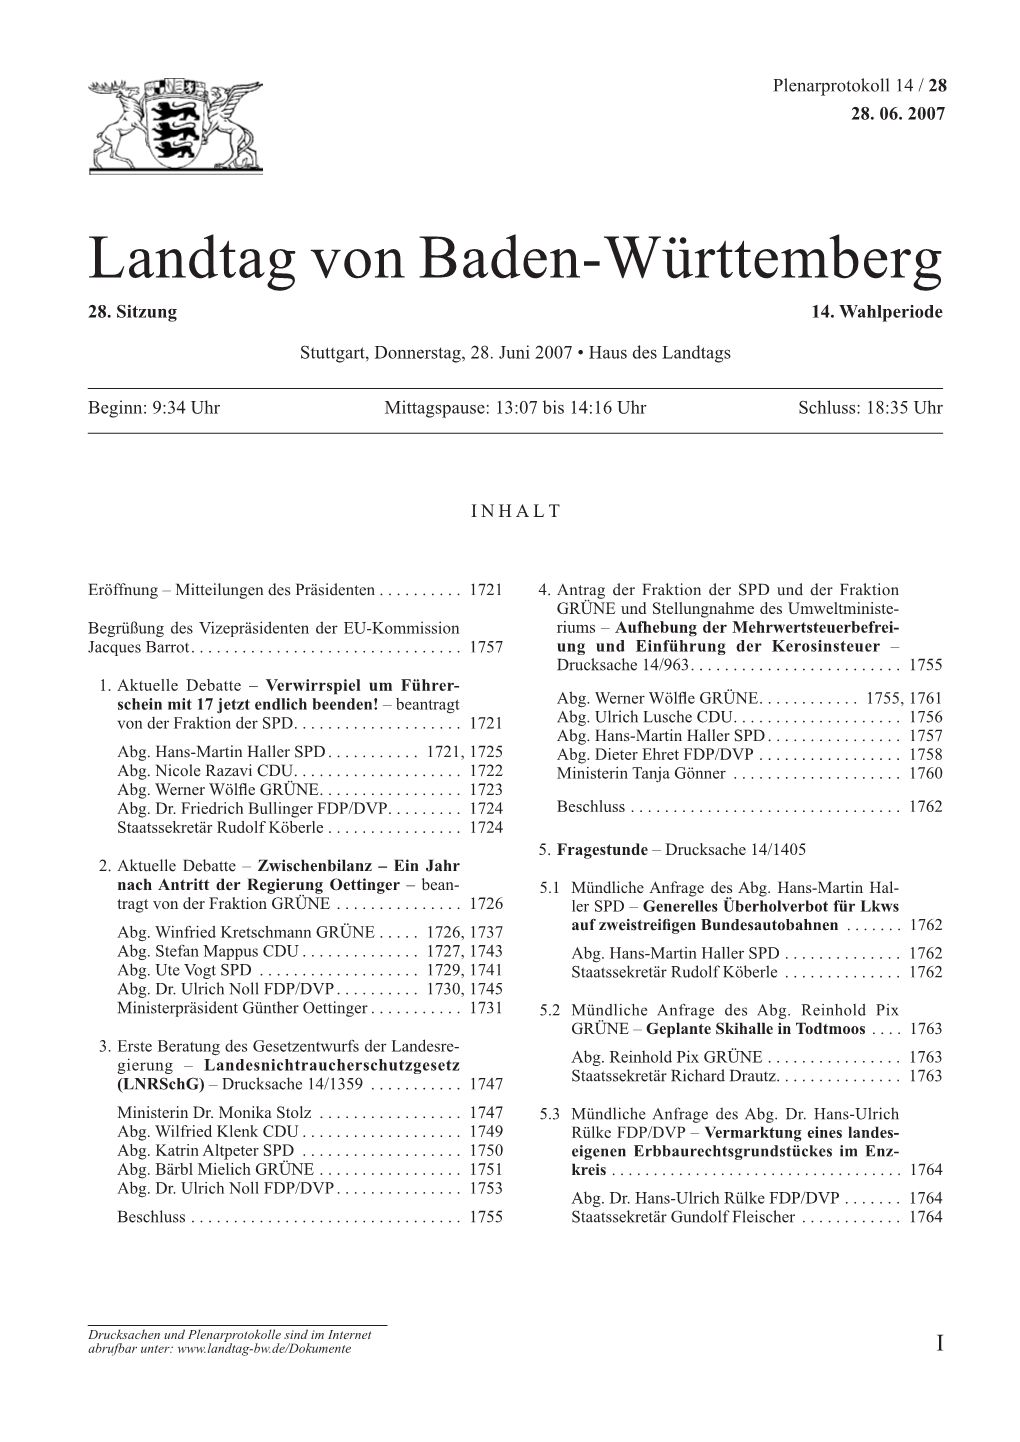 Landtag Von Baden-Württemberg 28